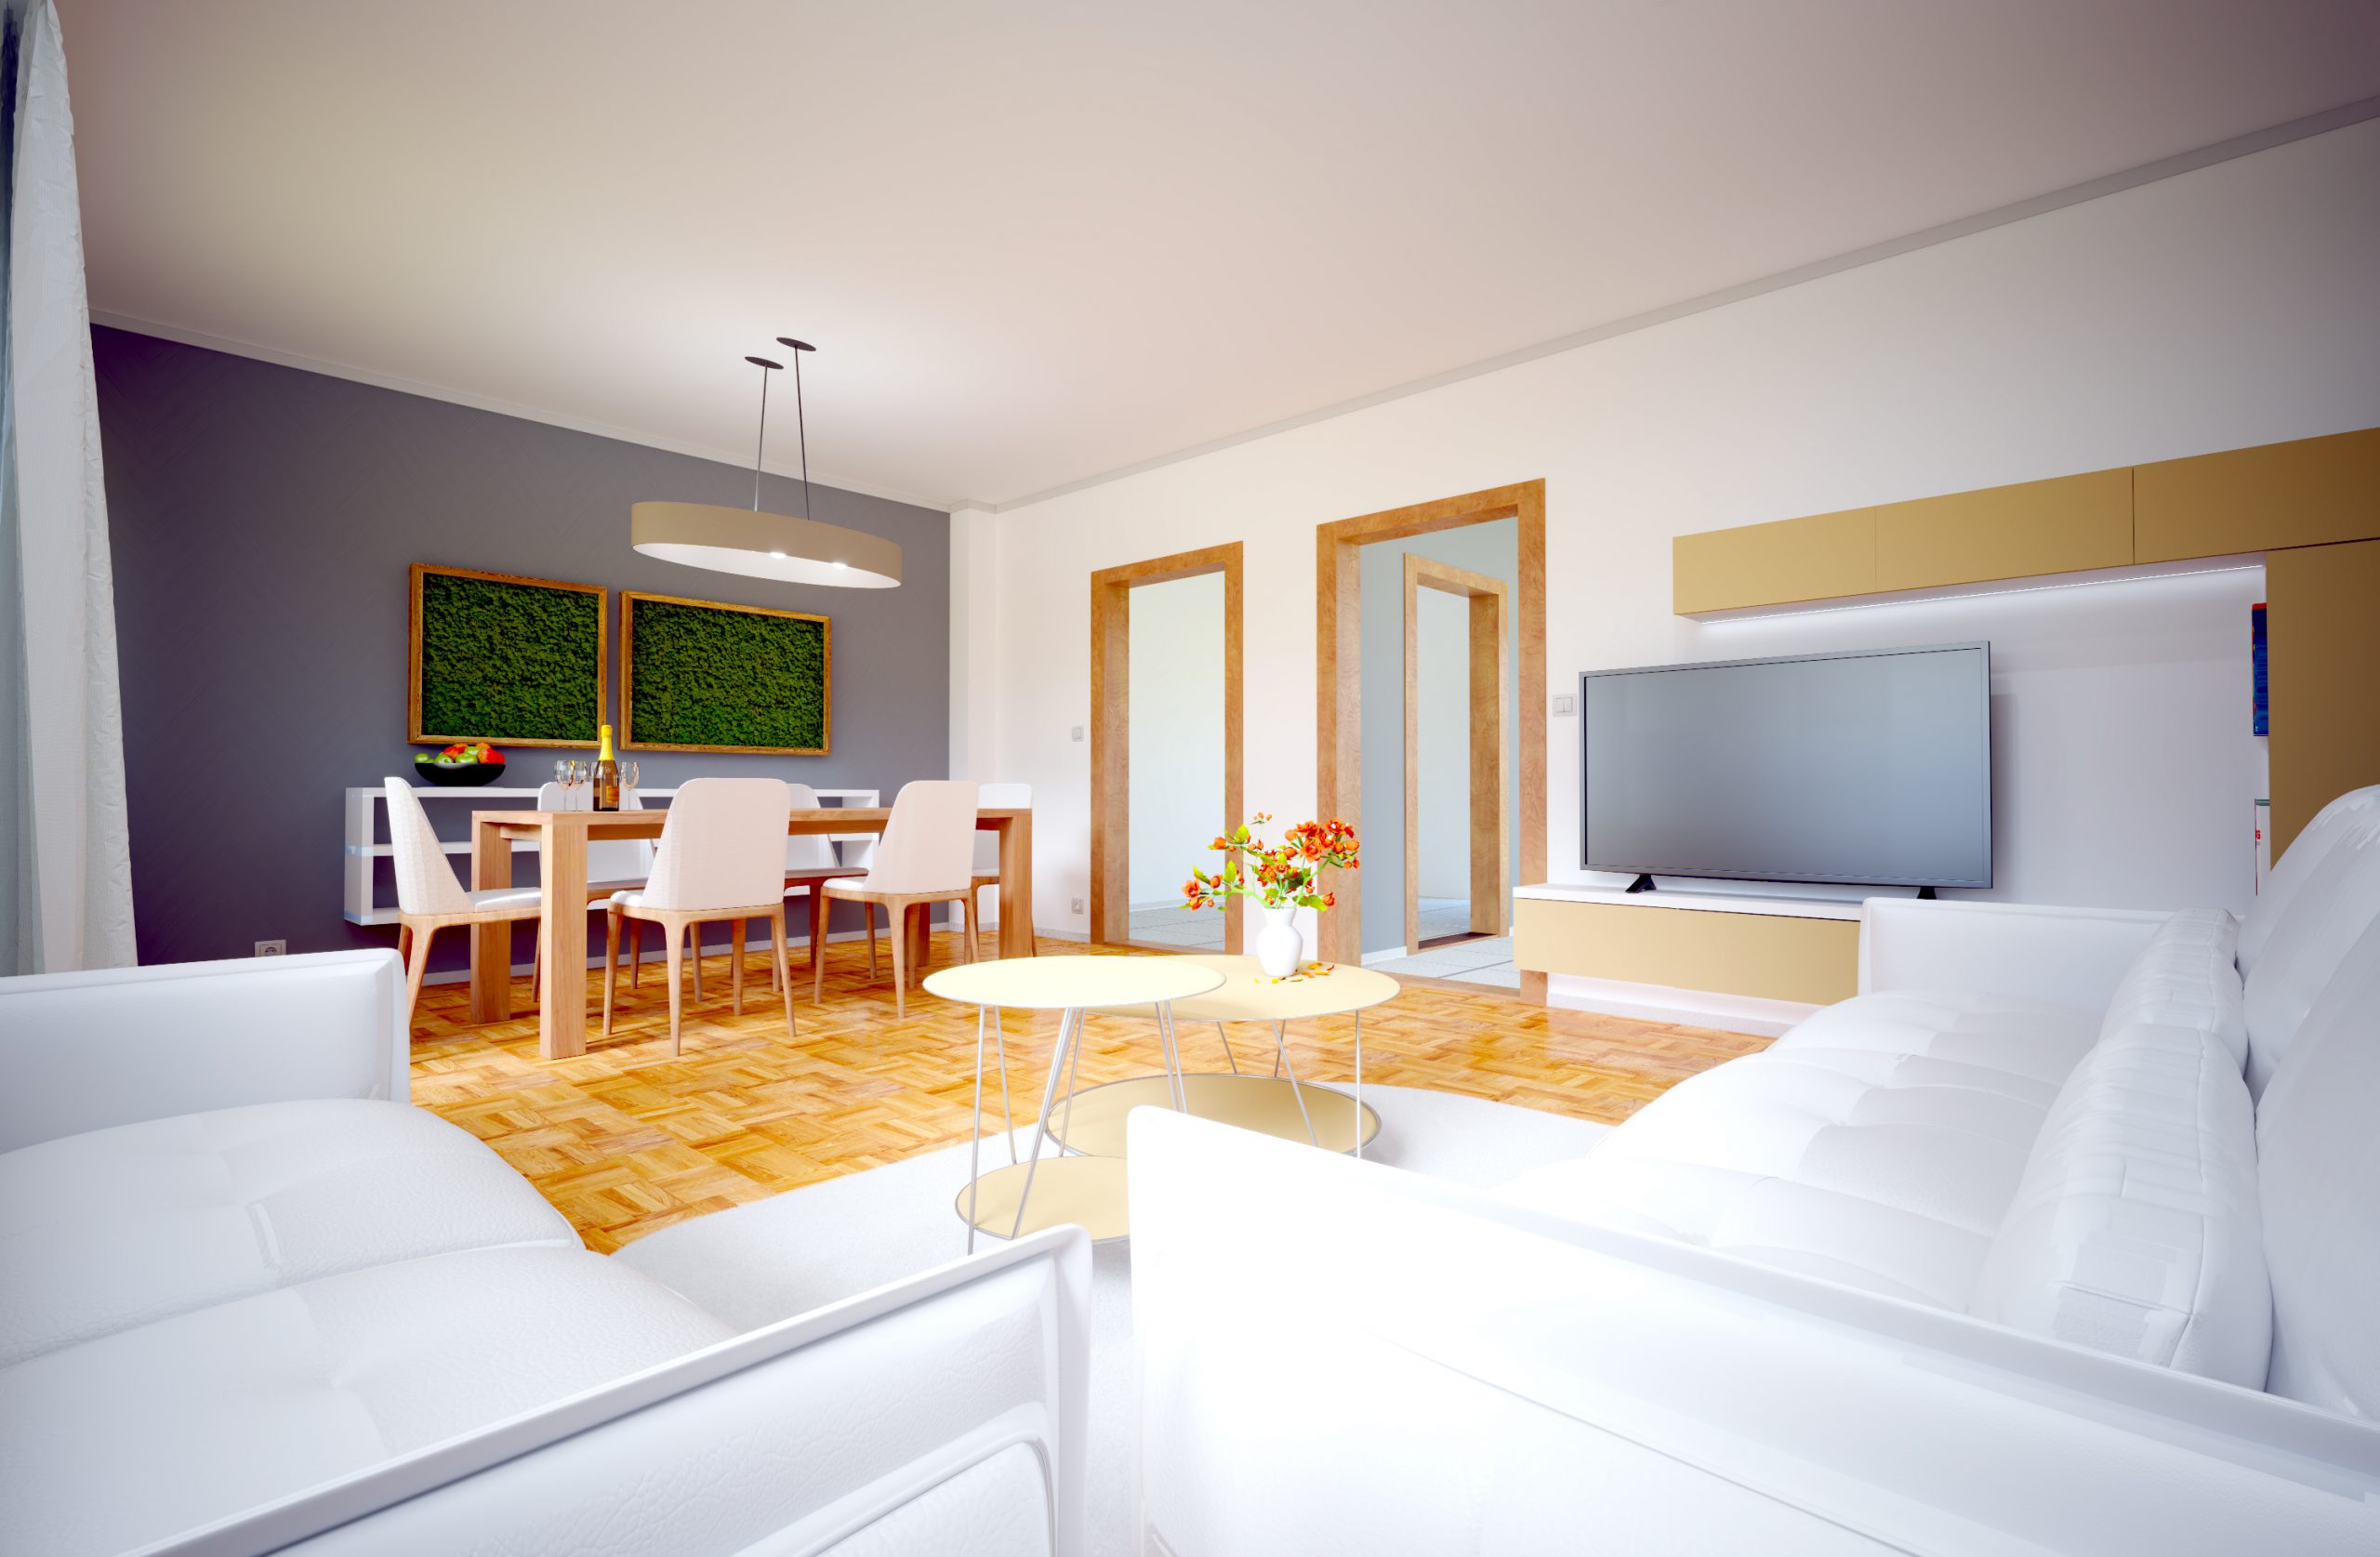 Návrh interiéru obývacej izby s jedálňou (White/Gray)